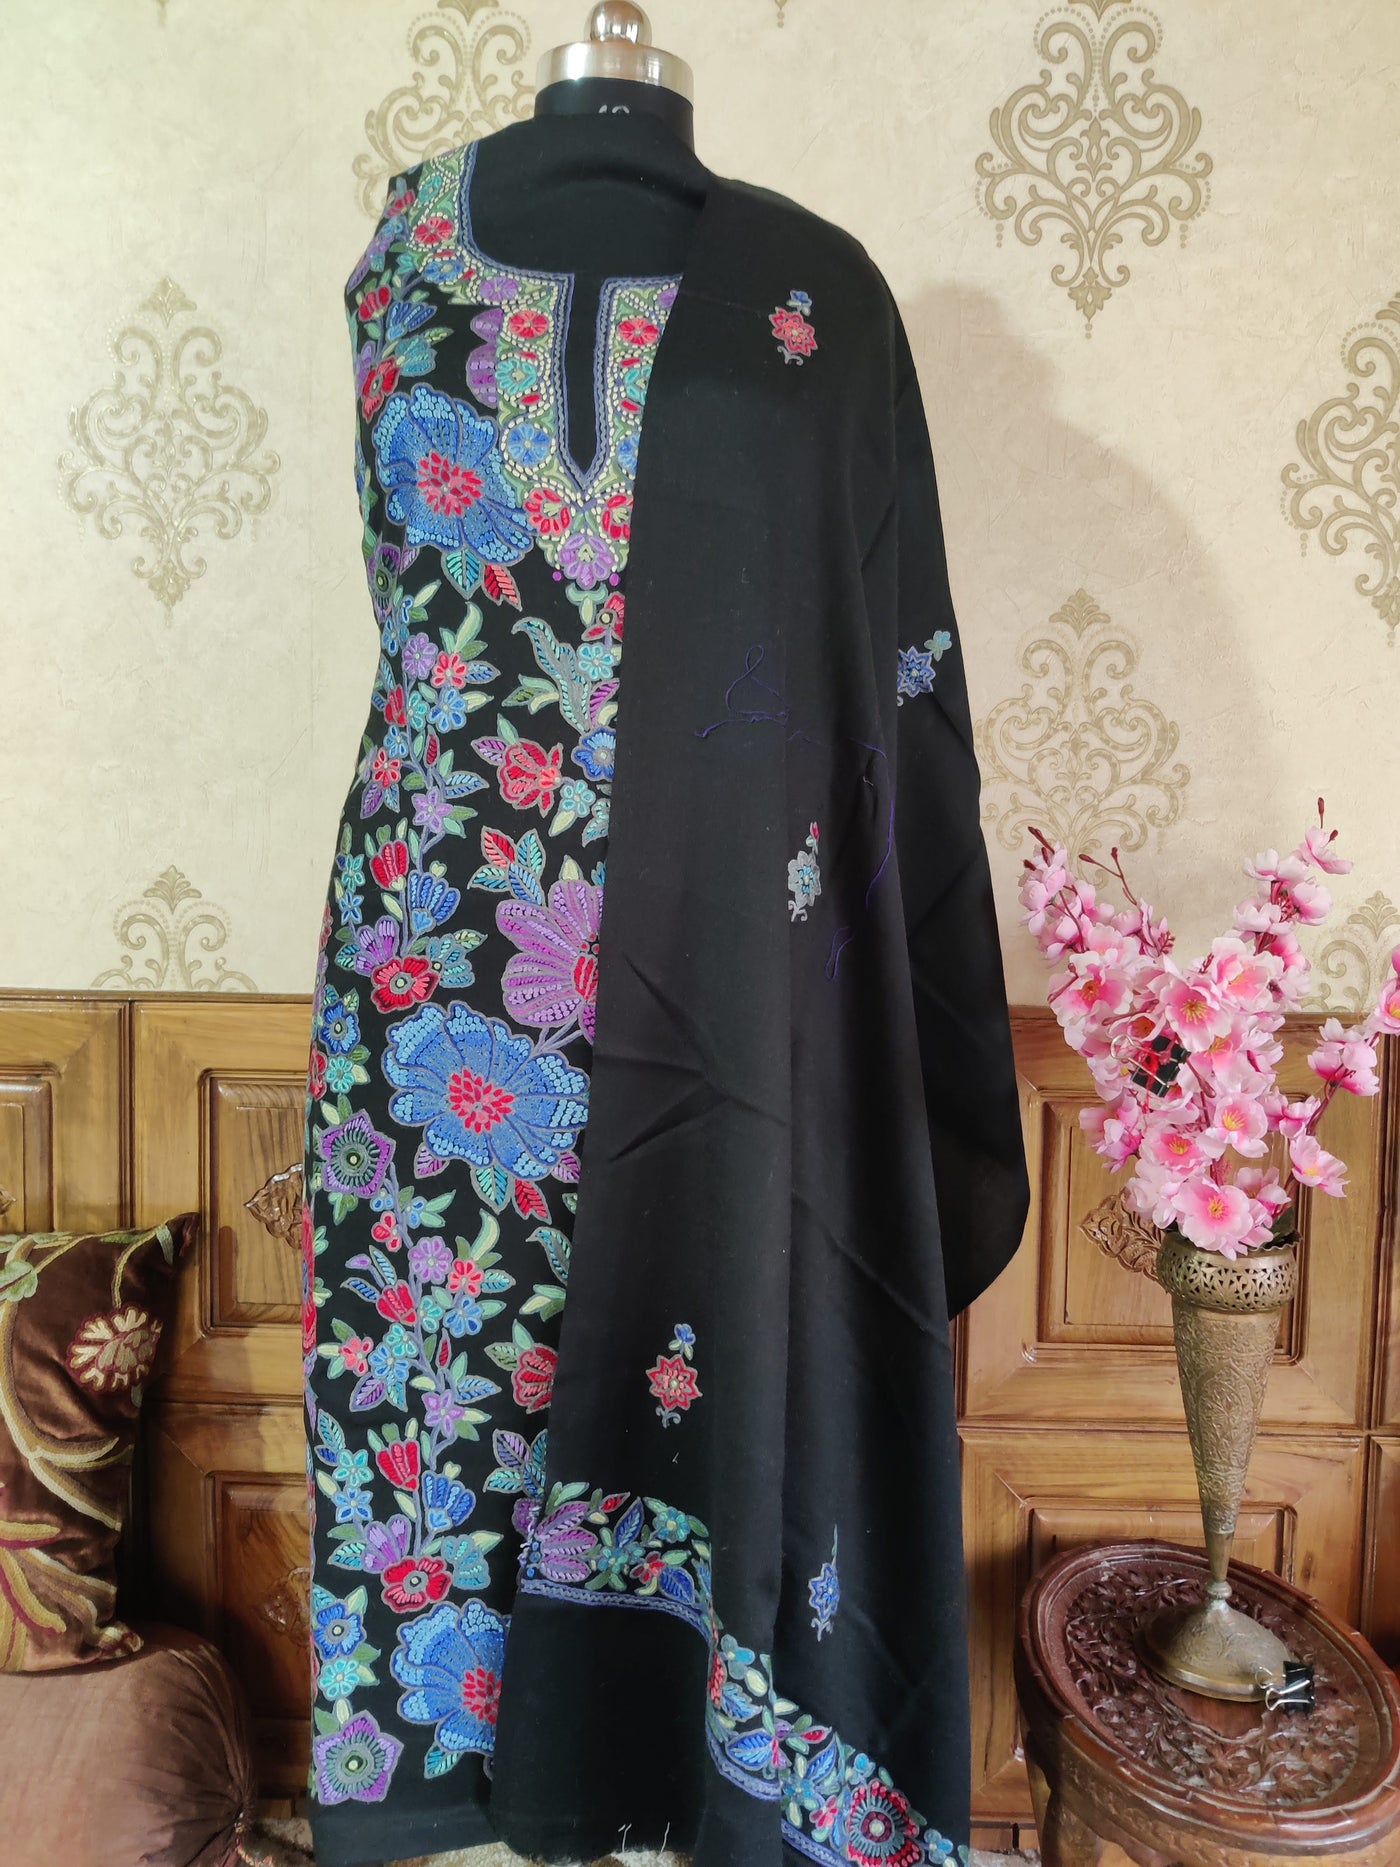 Kashmiri Woollen Suit With Hand Aari Embroidery All Over  (3 pcs) Woolen Suit KashmKari Kashmiri Woolen Suit Hand Embroidery | Kashmiri hand embroidery Suit online at best price 